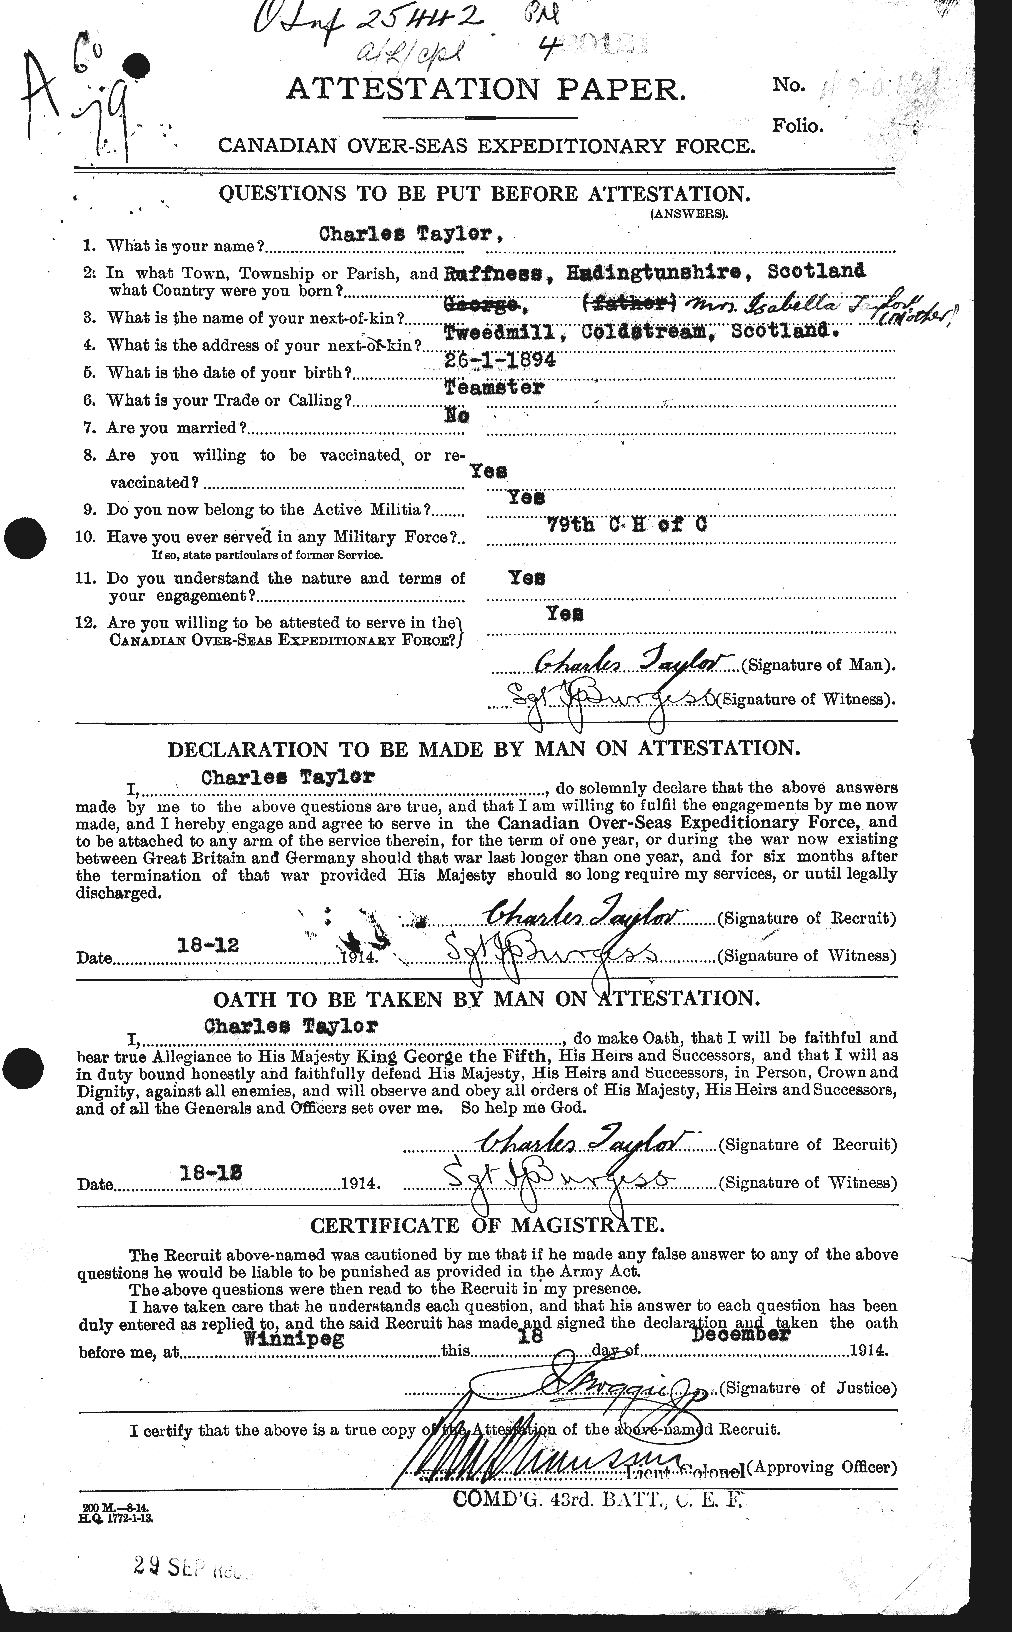 Dossiers du Personnel de la Première Guerre mondiale - CEC 626816a